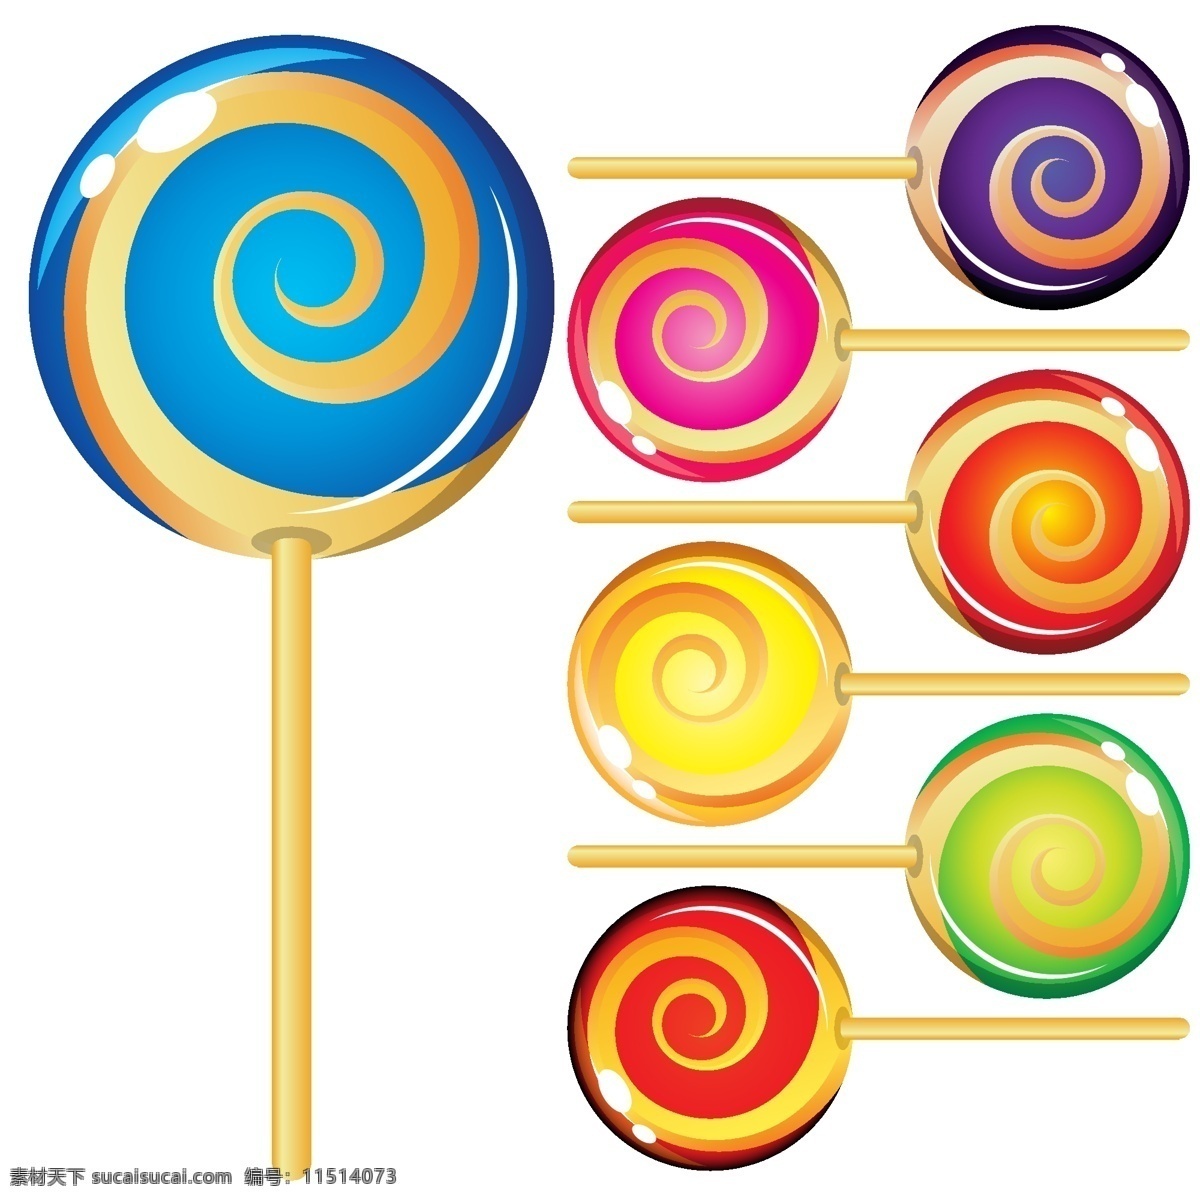 彩色 棒棒糖 矢量 食品 糖果 丰富多彩 矢量图 日常生活